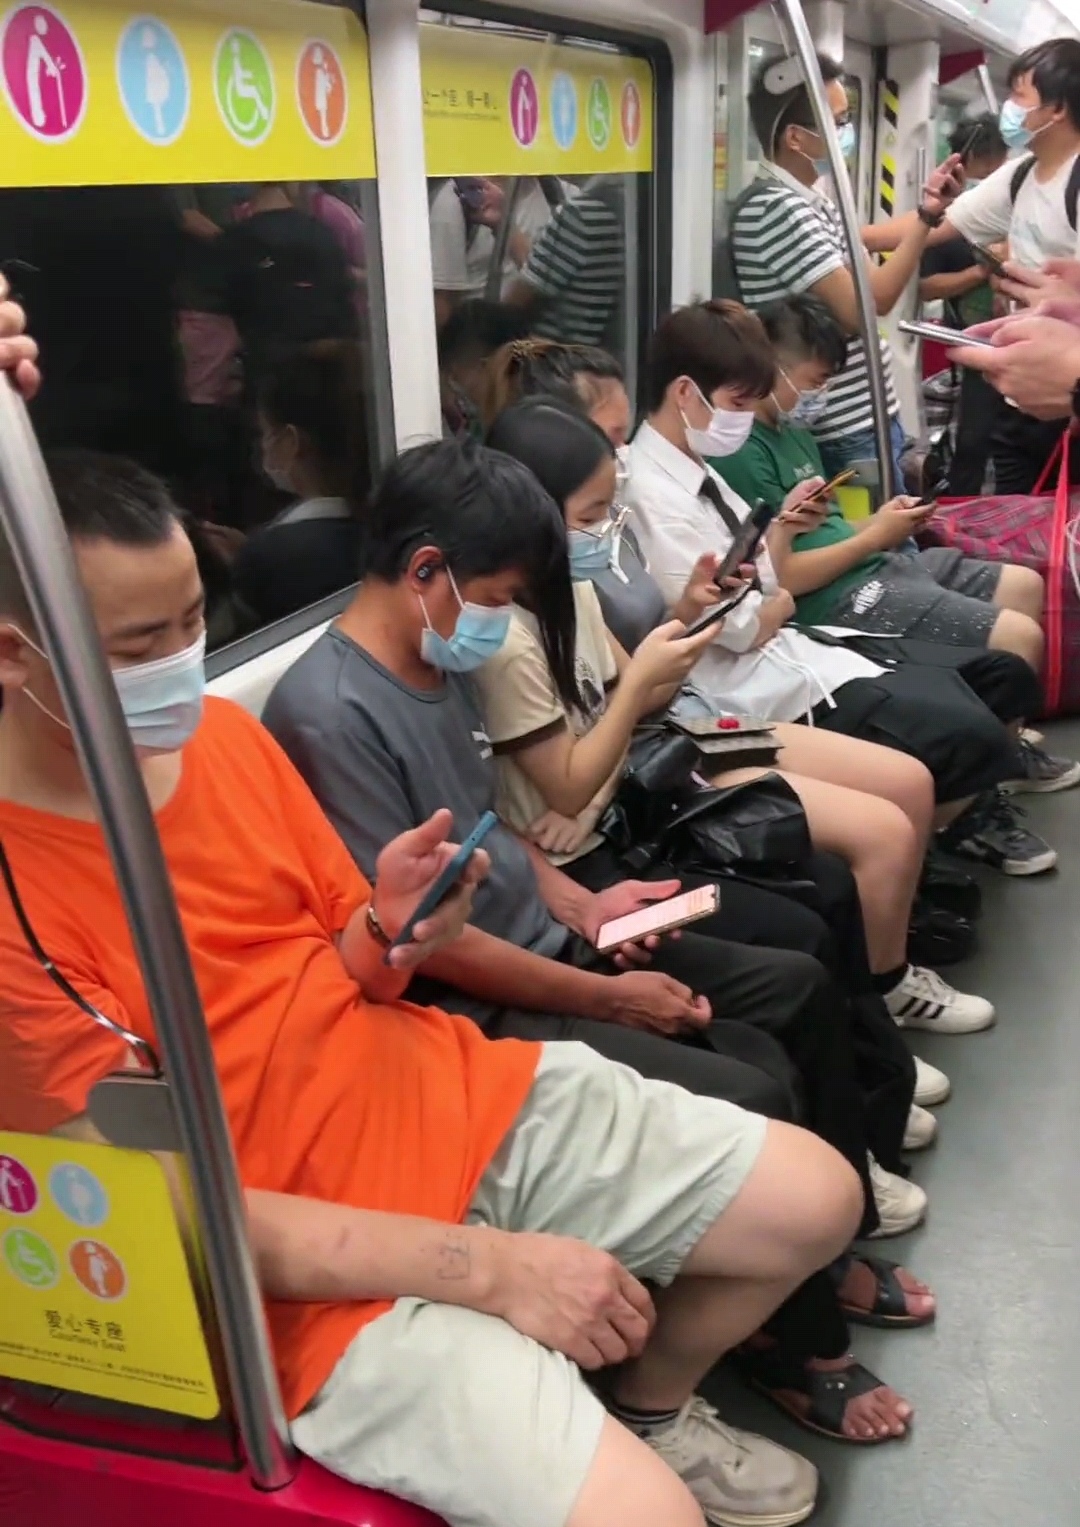 广州:女子抱娃坐地铁,年轻人全部低头玩手机,竟无一人主动让座